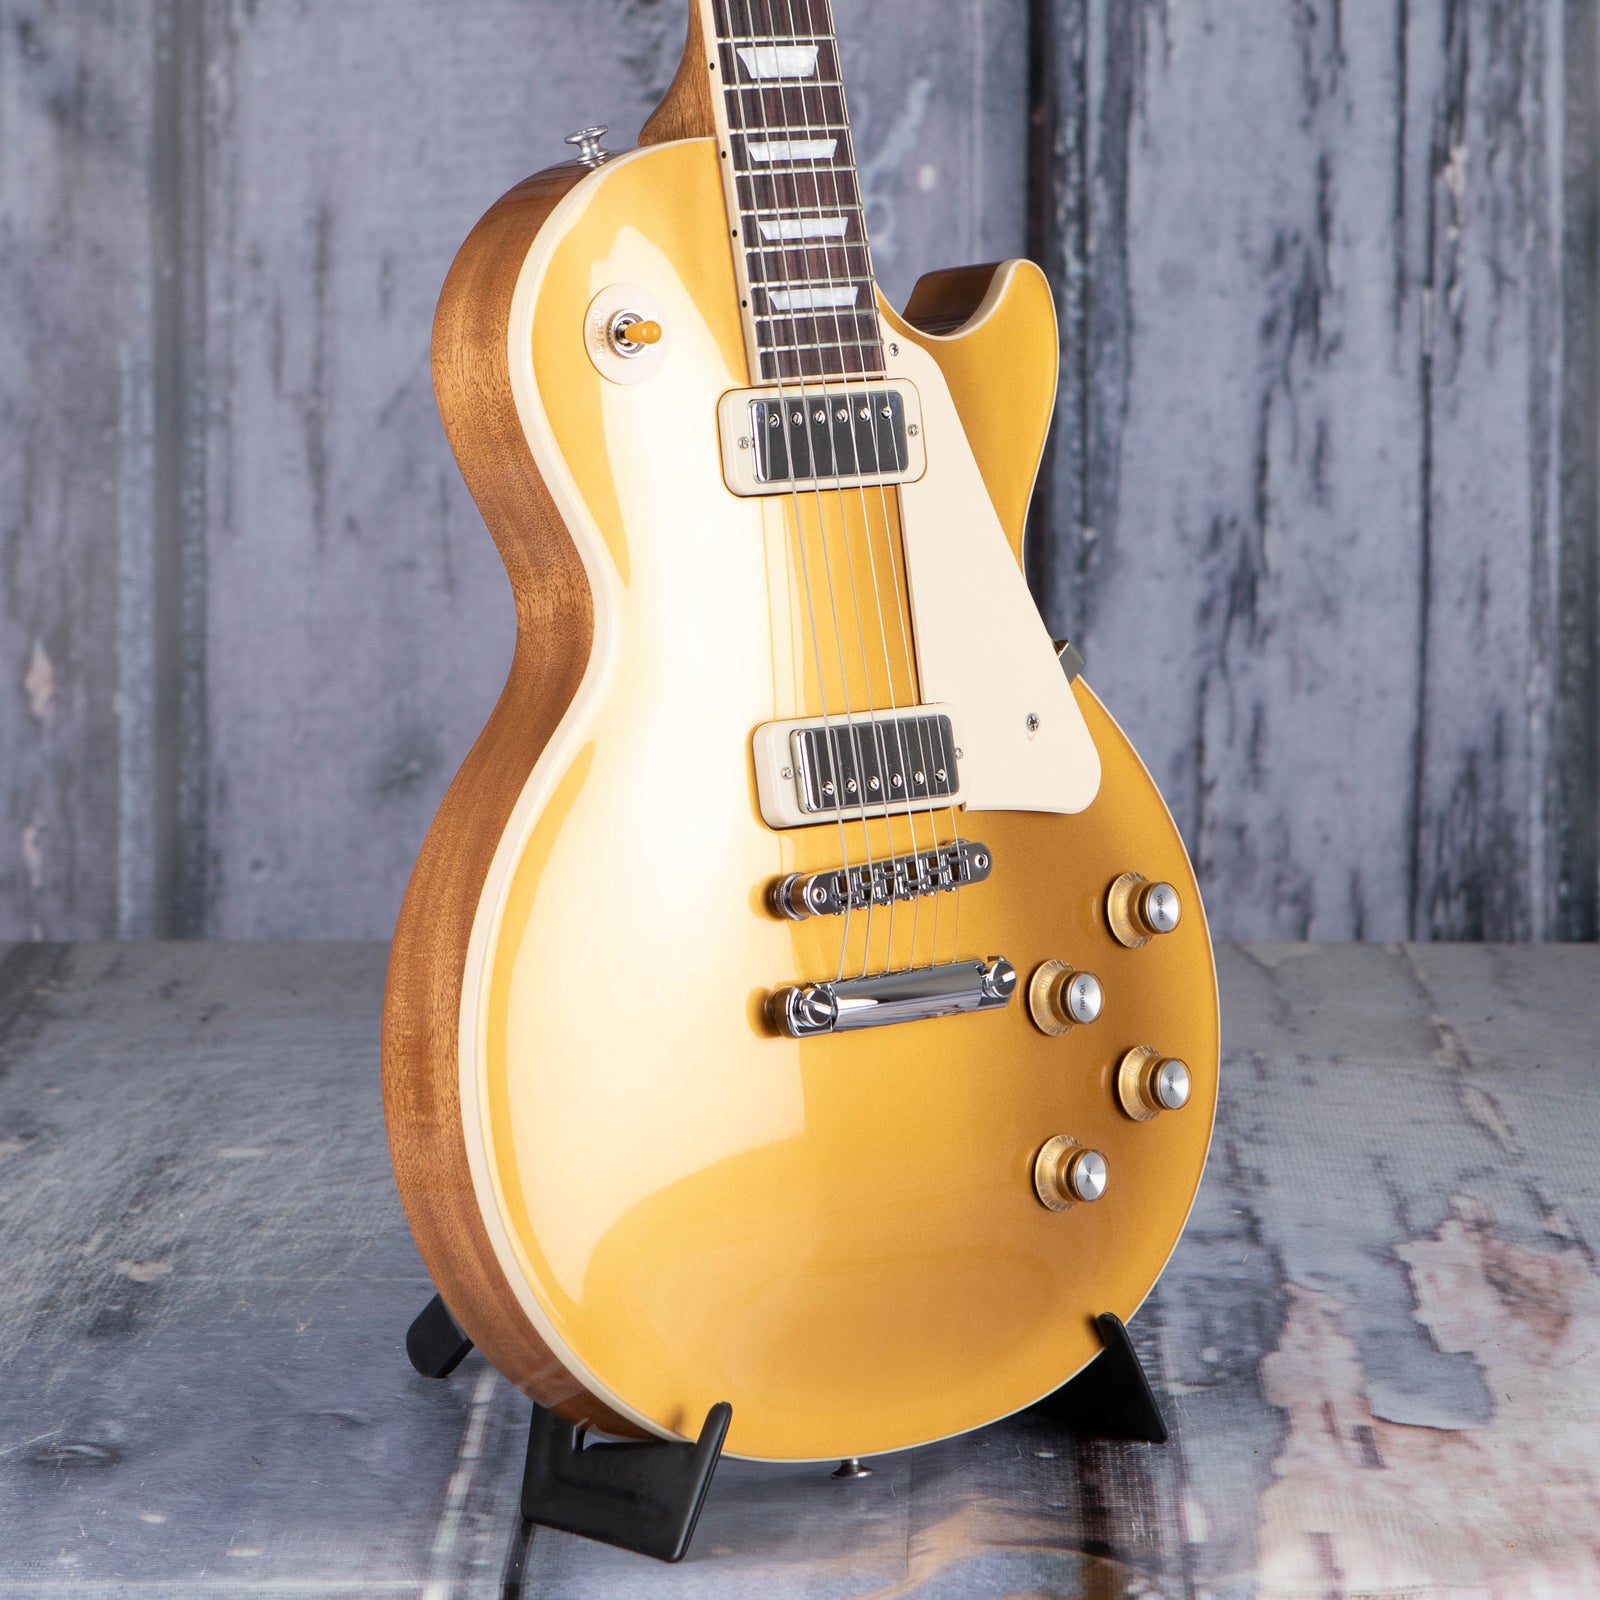 Bạn đang tìm kiếm một cây đàn guitar đỉnh cao? Hãy tham khảo bán đàn guitar Gibson USA Les Paul 70s Deluxe, Gold Top của Replay Guitar! Đây là một sản phẩm đẹp mắt, chất lượng cao và âm thanh tuyệt vời. Đừng bỏ lỡ cơ hội sở hữu một trong những cây đàn guitar tốt nhất trong năm nay.